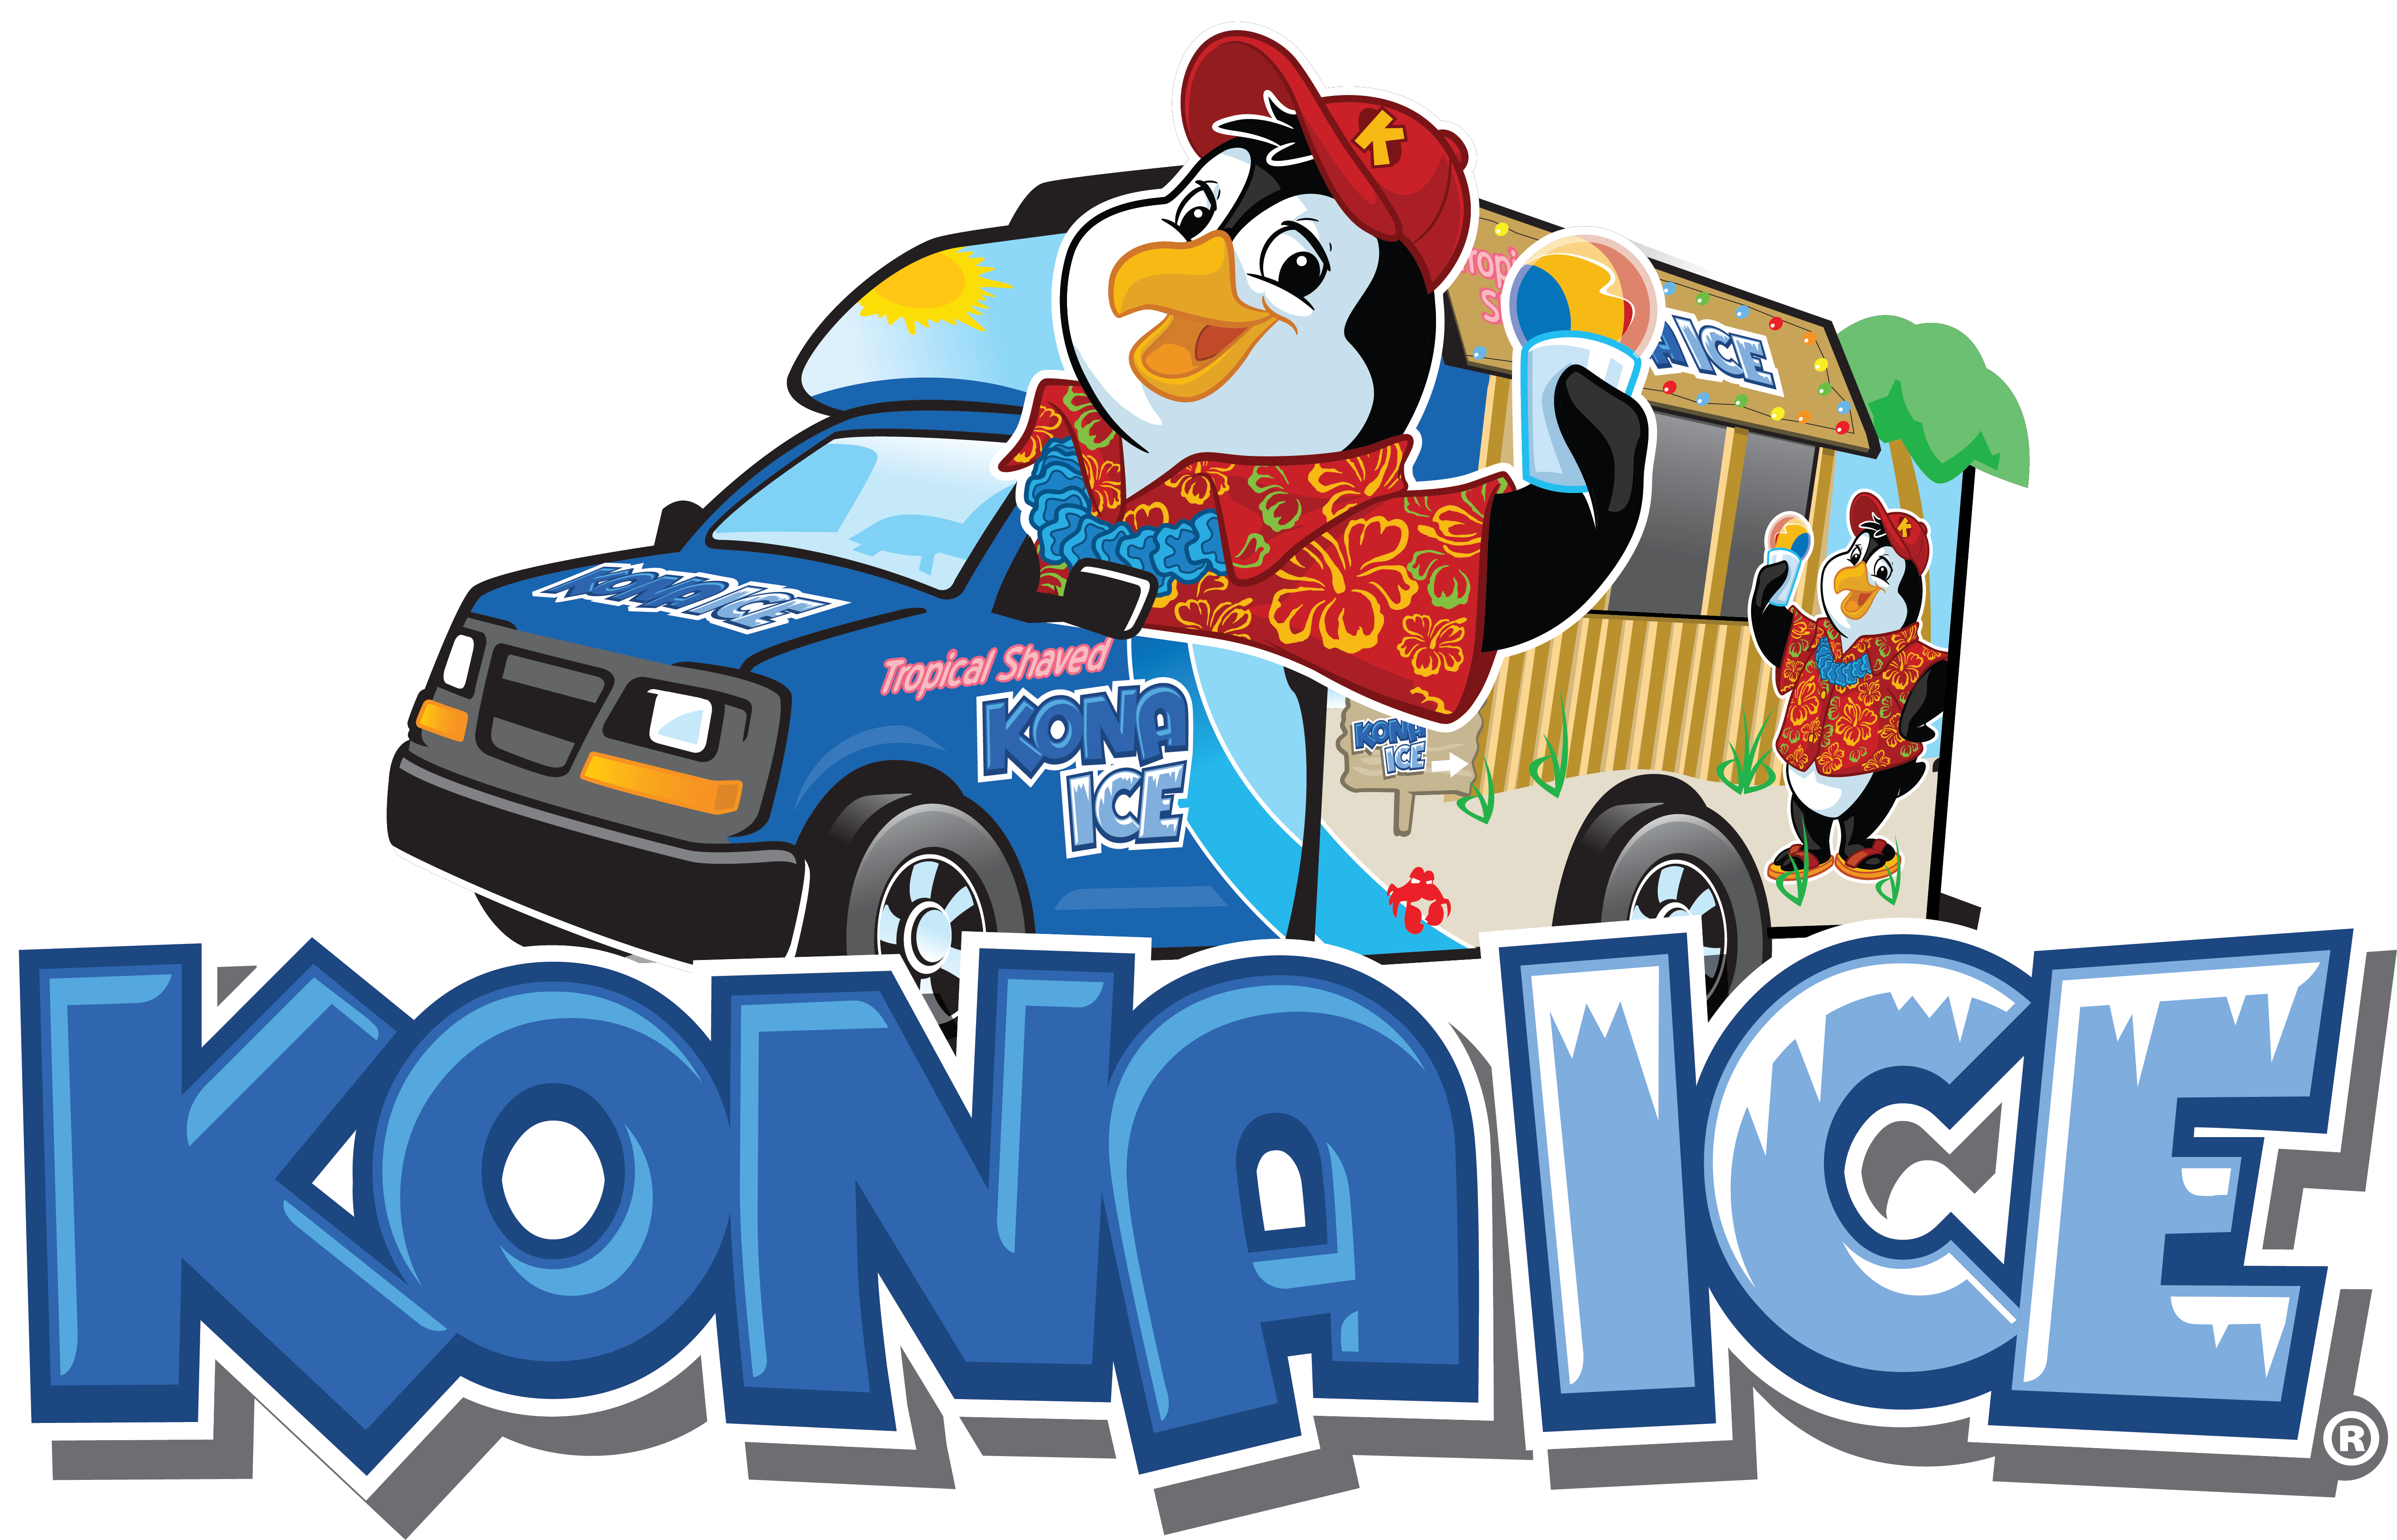 Kona Ice Logos-01 - Kona Ice (5425x3486)